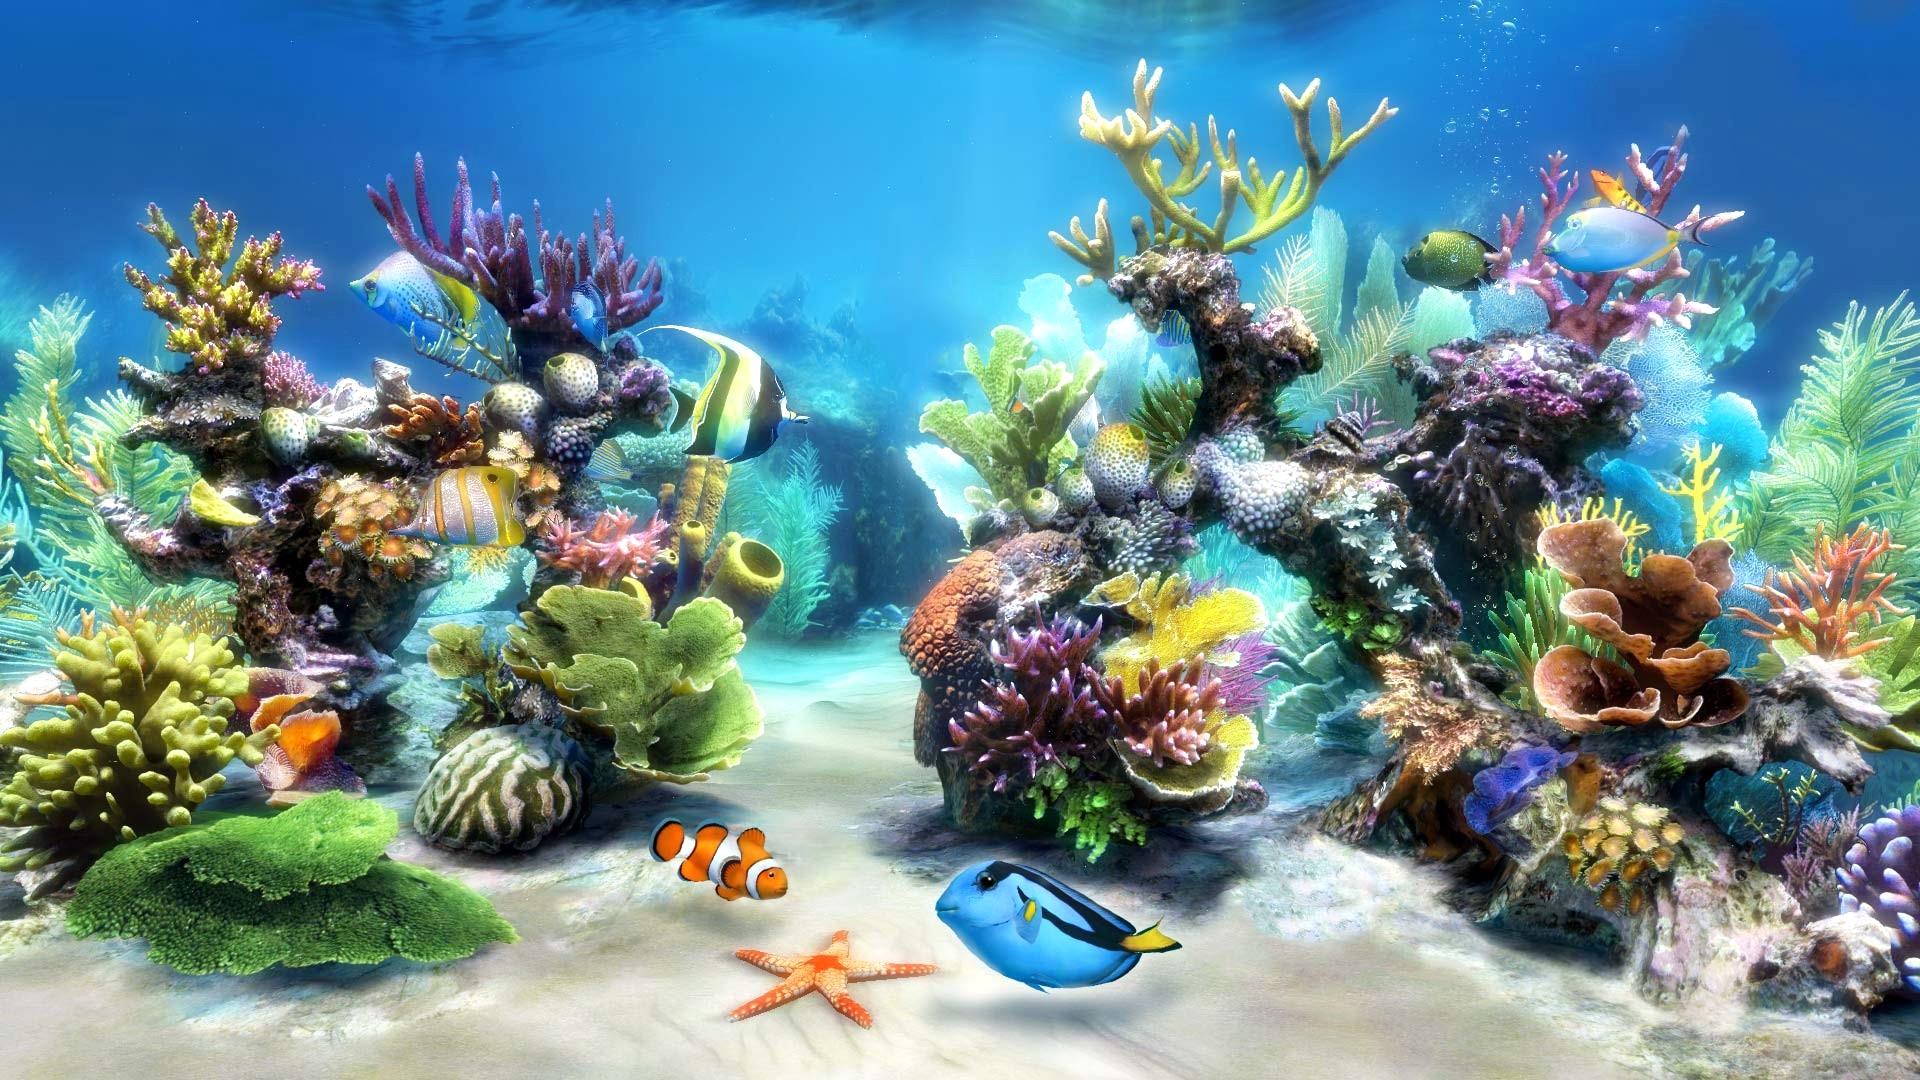 live wallpaper hd,meeresbiologie,riff,korallenriff,korallenrifffische,unter wasser